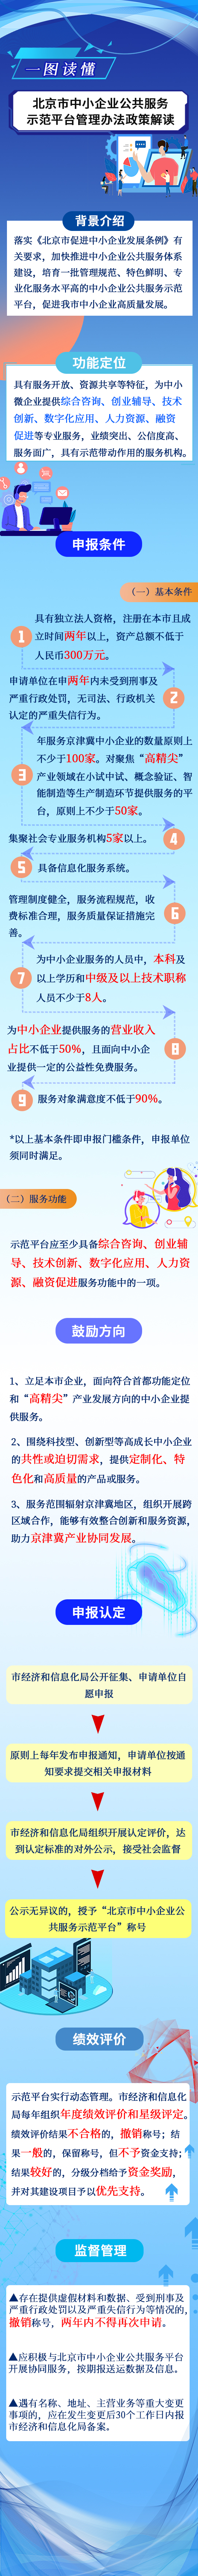 北京市中小企业公共服务示范平台管理办法.jpg